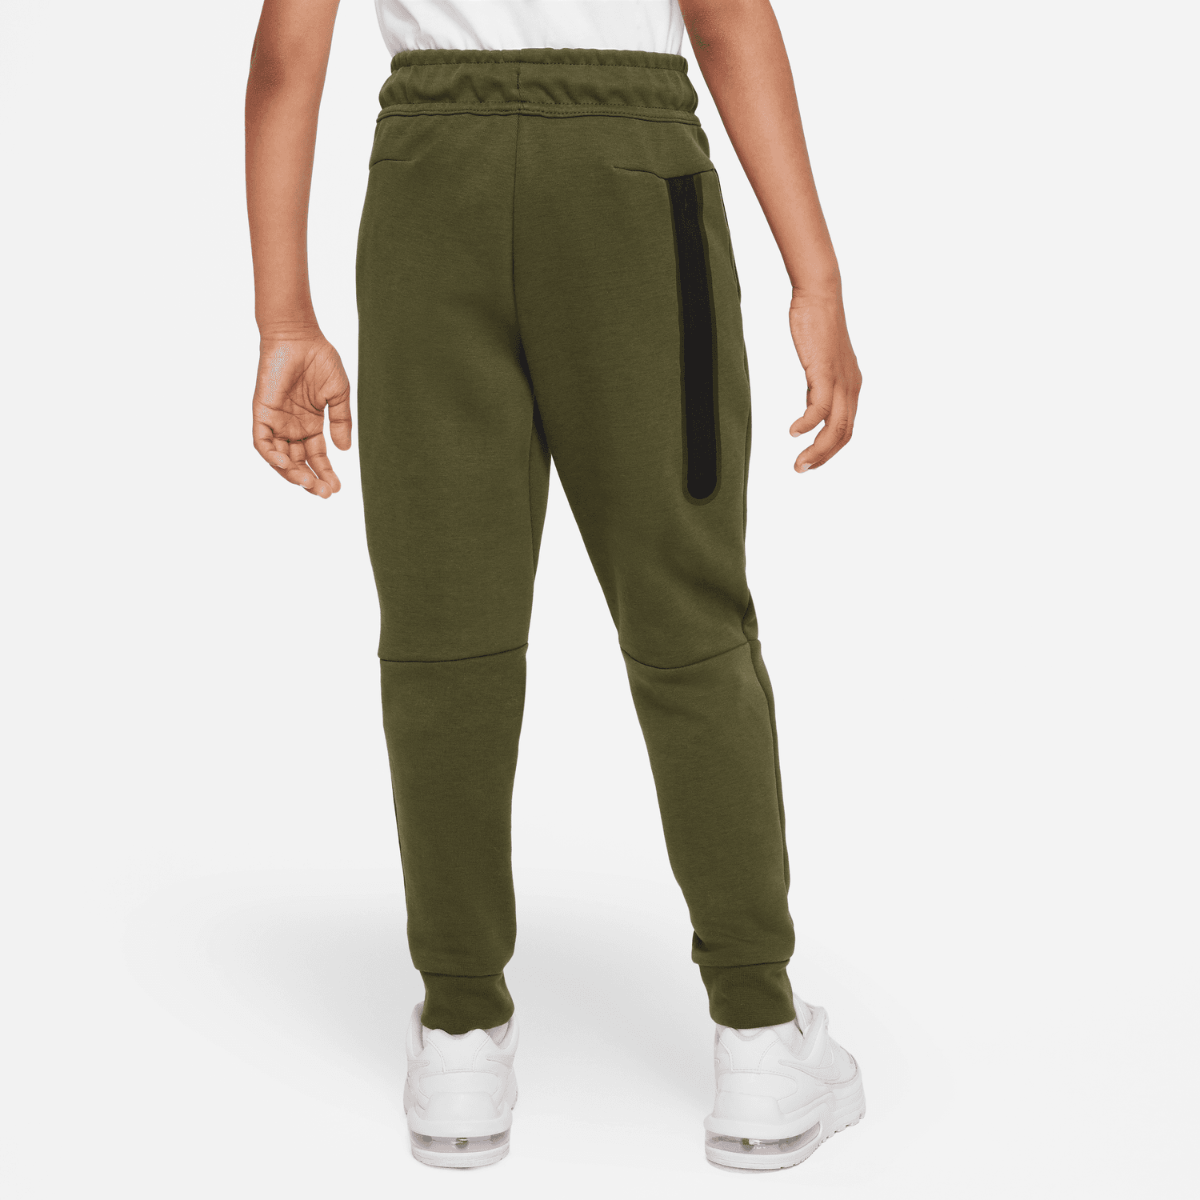 Pantalon jogging Nike Tech Fleece Junior - Kaki/Noir